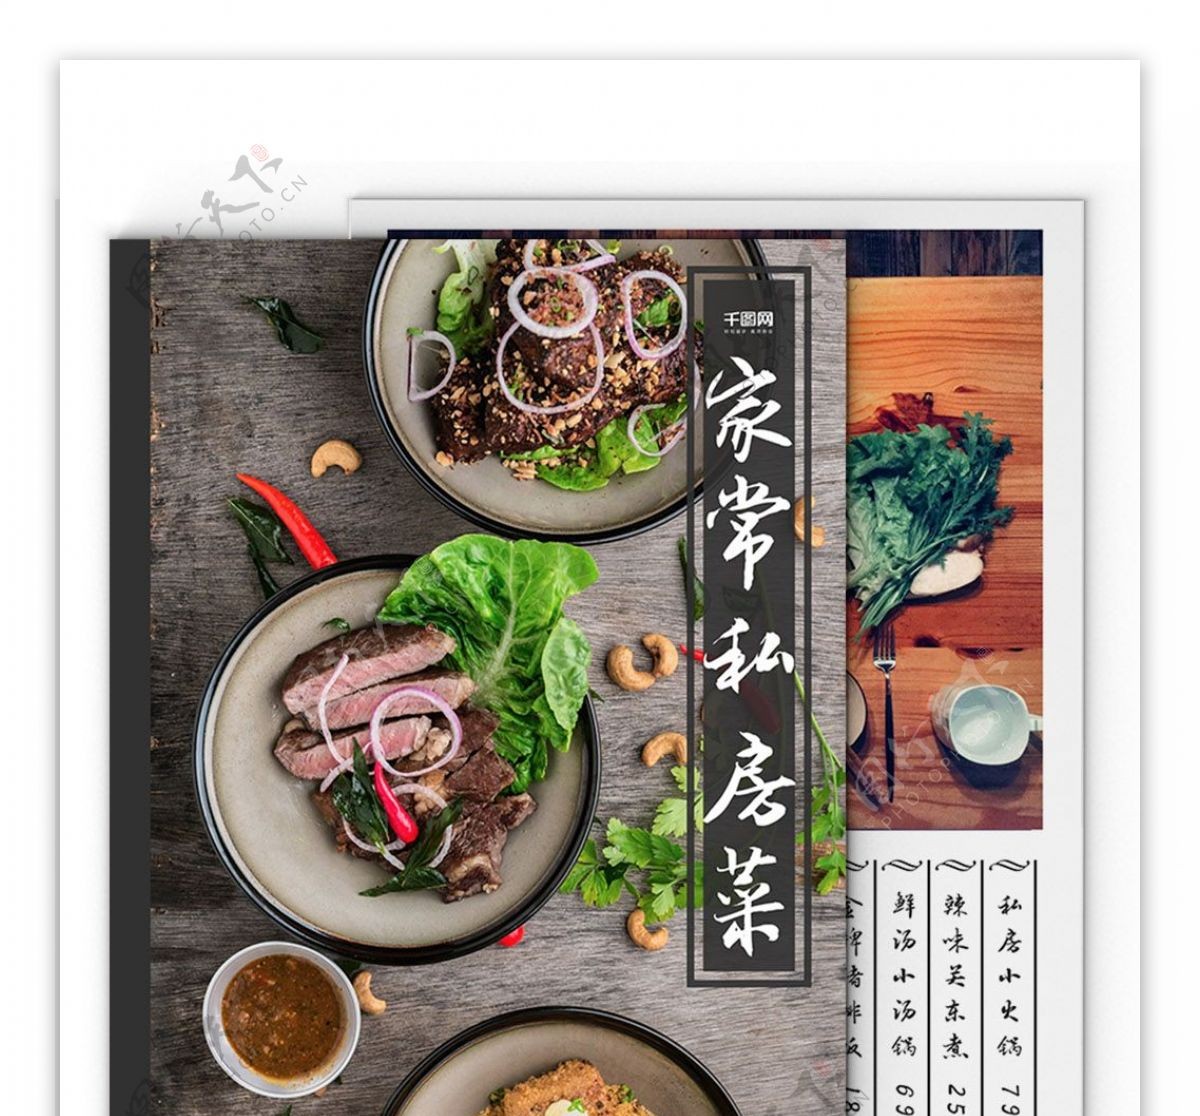 中国风传统家常私房菜菜谱菜单